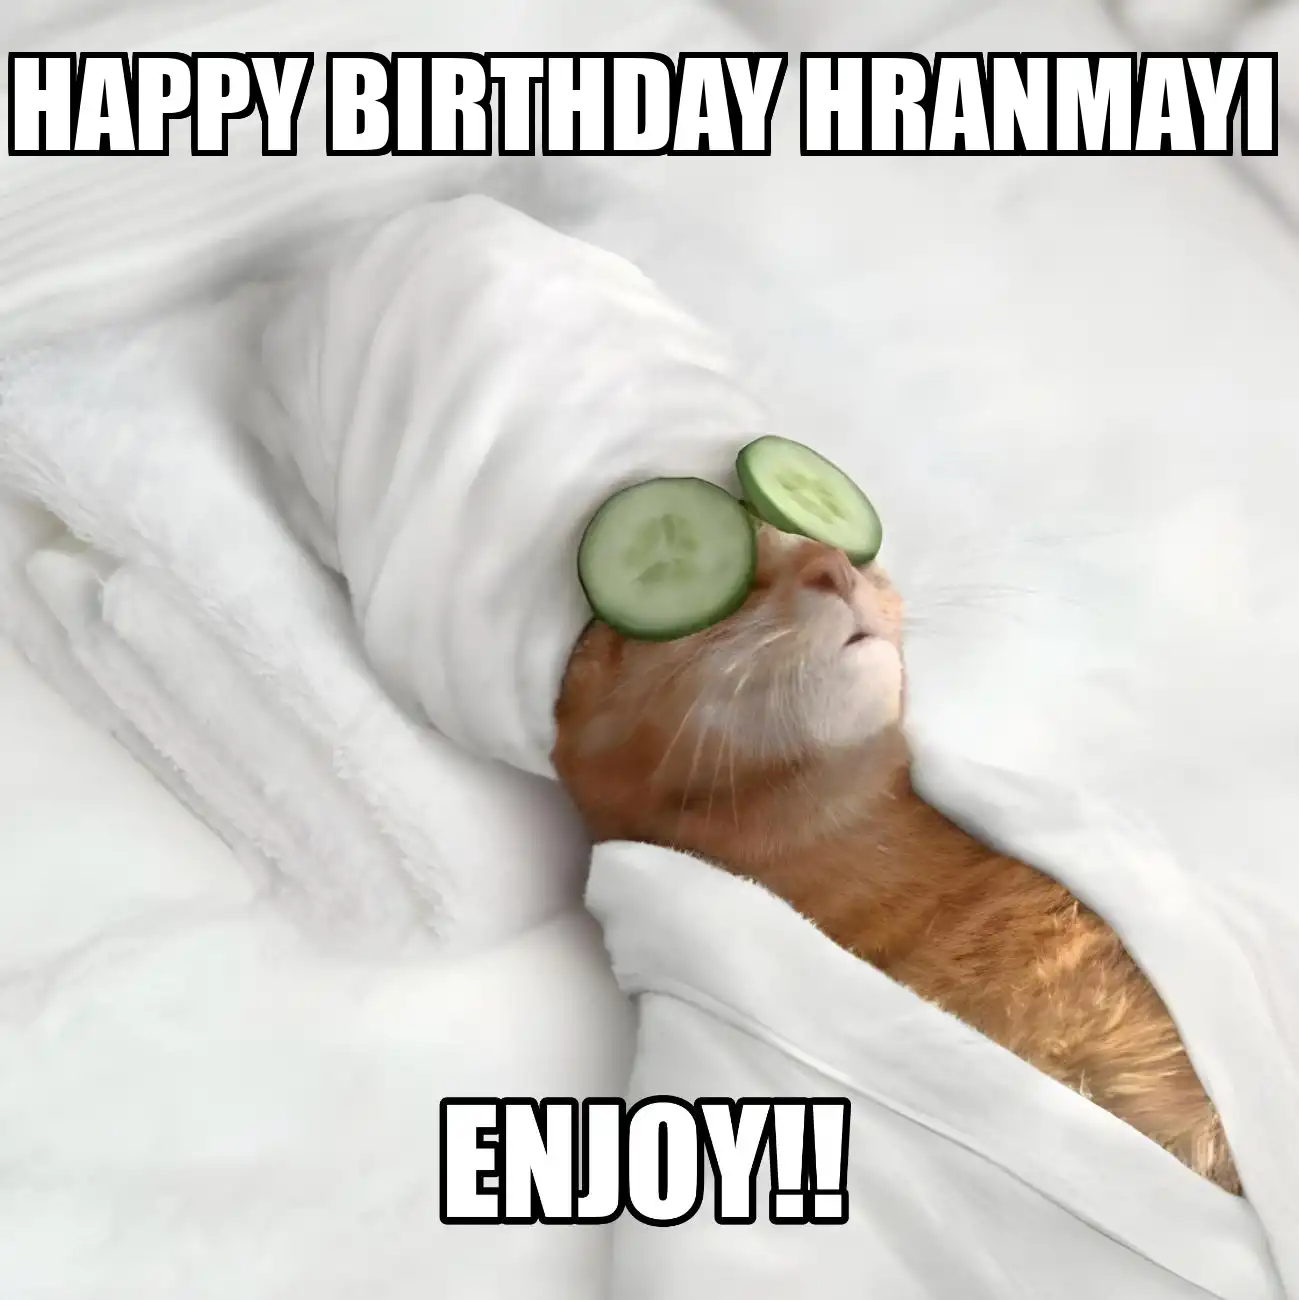 Happy Birthday Hranmayi Enjoy Cat Meme